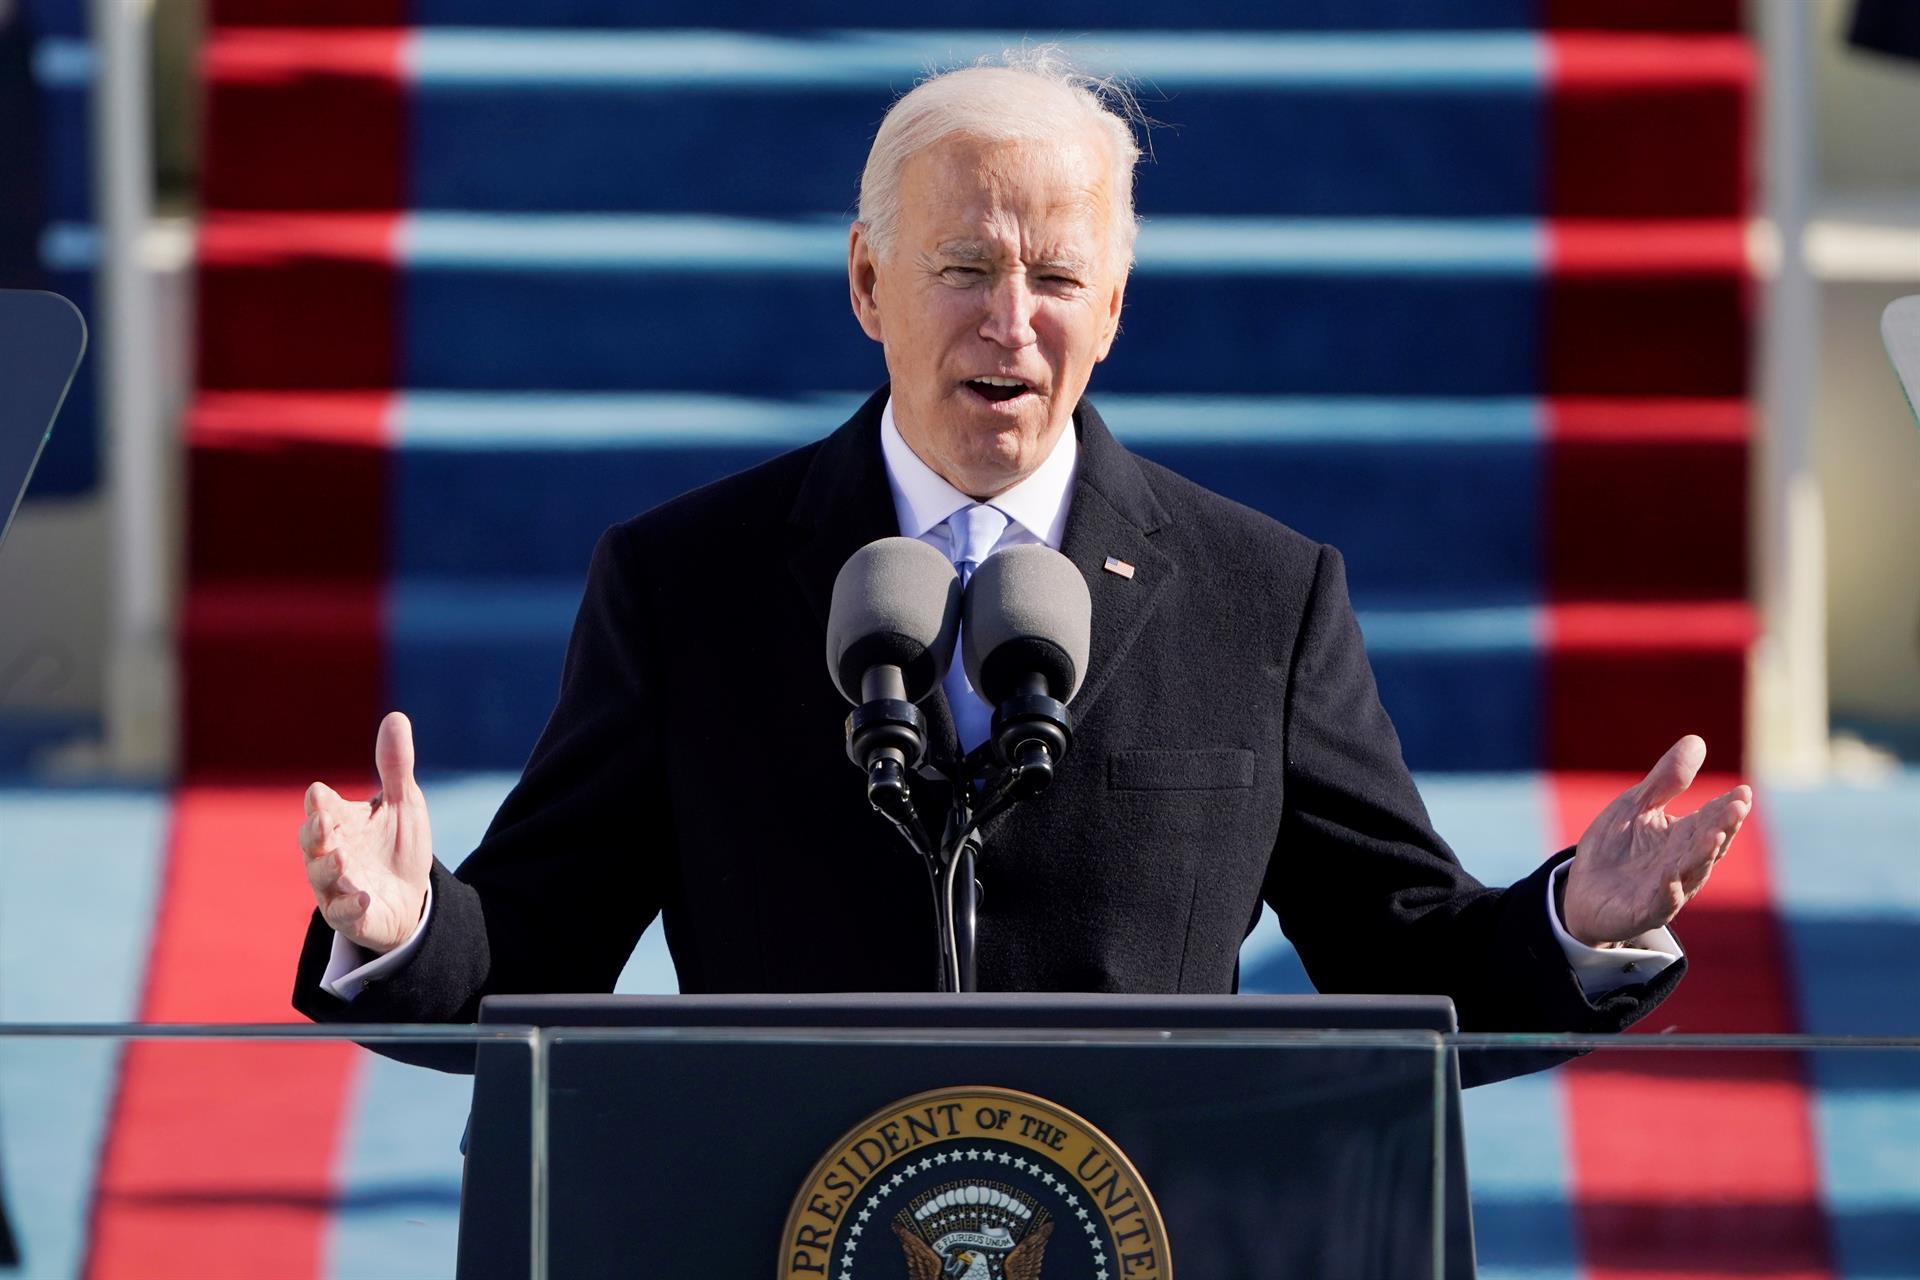 Fotografía de archivo fechada el 20 de enero de 2021 del presidente de Estados Unidos, Joe Biden, mientras ofrece su primer discurso tras jurar a su cargo durante una ceremonia, en Washington (EE.UU.). EFE/Patrick Semansky/Pool